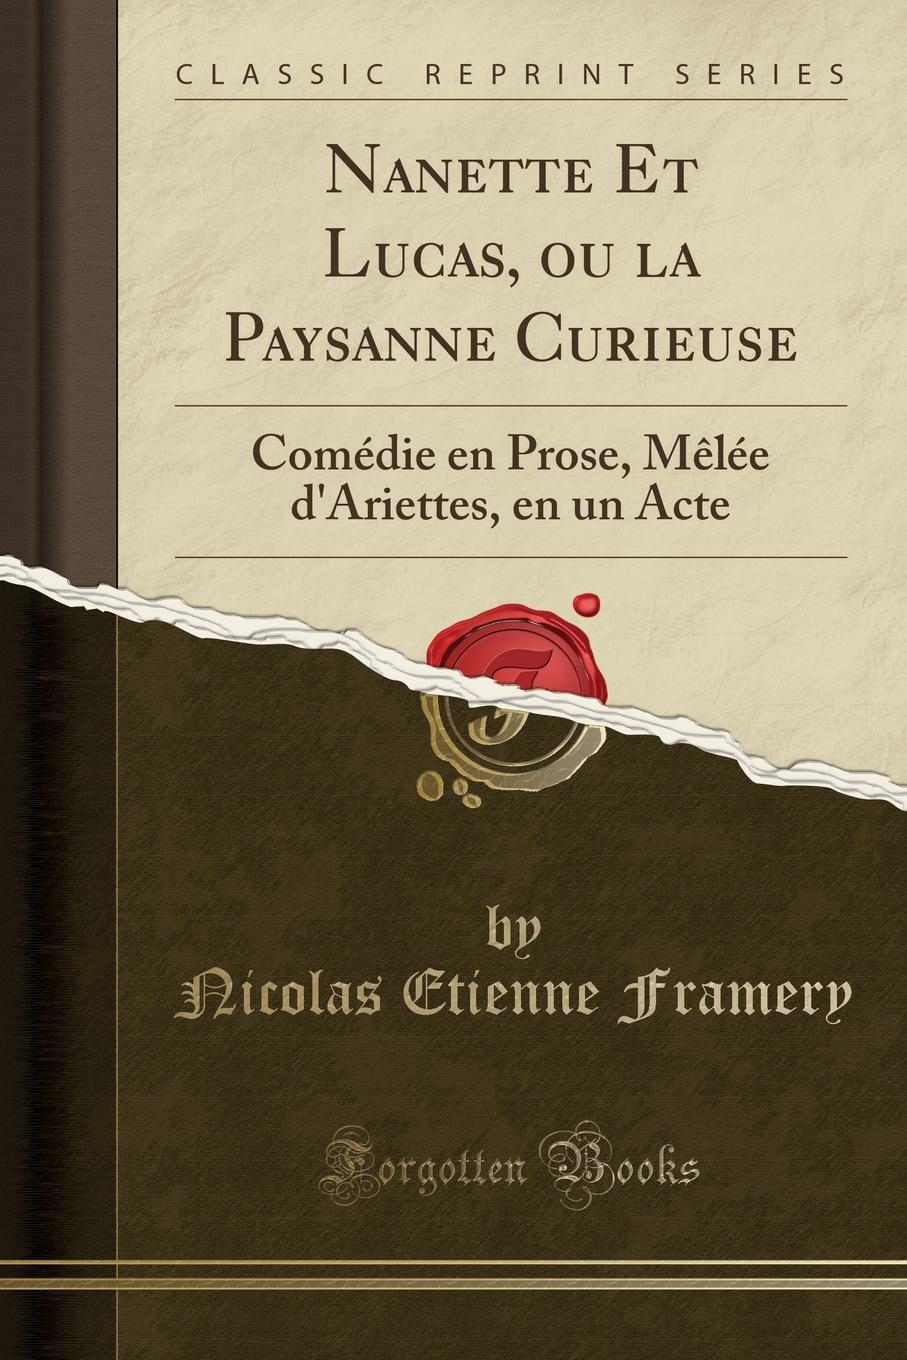 Nicolas Etienne Framery Nanette Et Lucas, ou la Paysanne Curieuse. Comedie en Prose, Melee d.Ariettes, en un Acte (Classic Reprint)